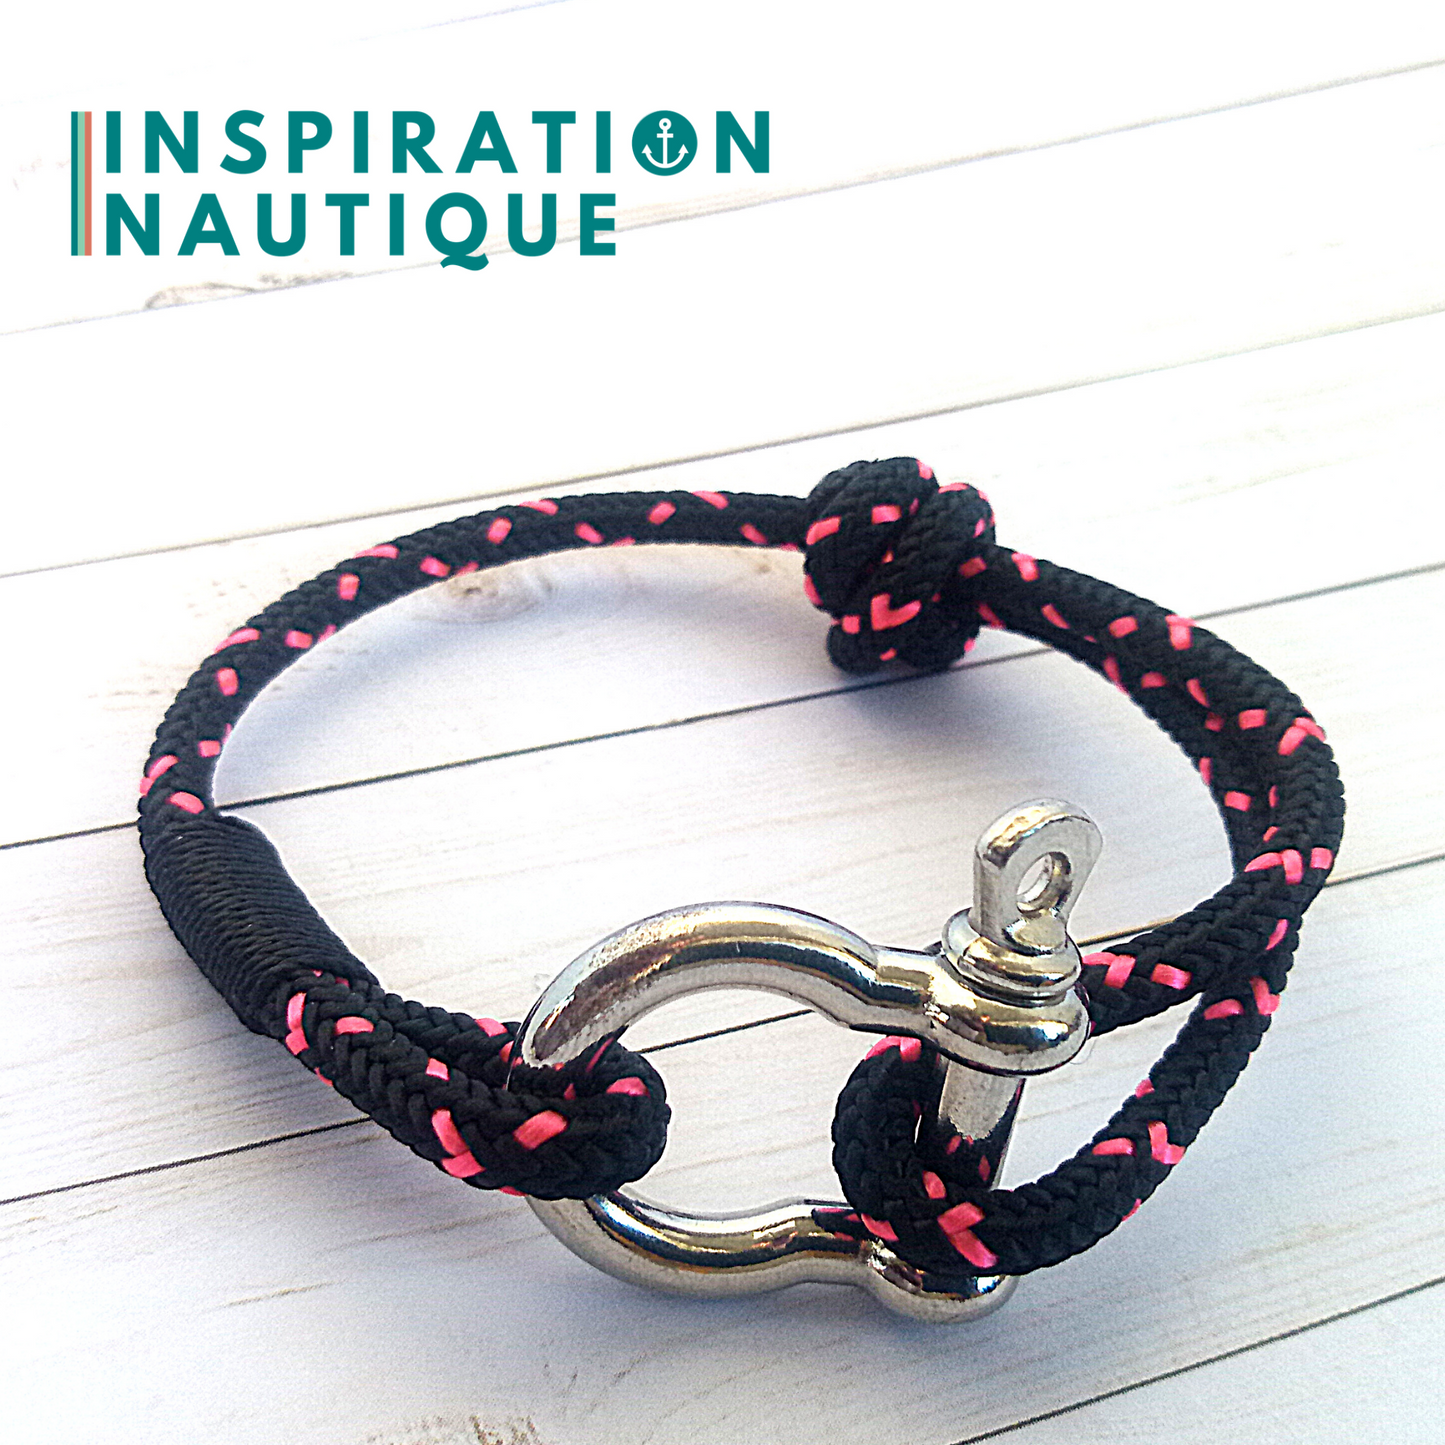 Bracelet marin avec manille en cordage de bateau et acier inoxydable, ajustable, Noir avec traceur rose, surliure noire, Medium